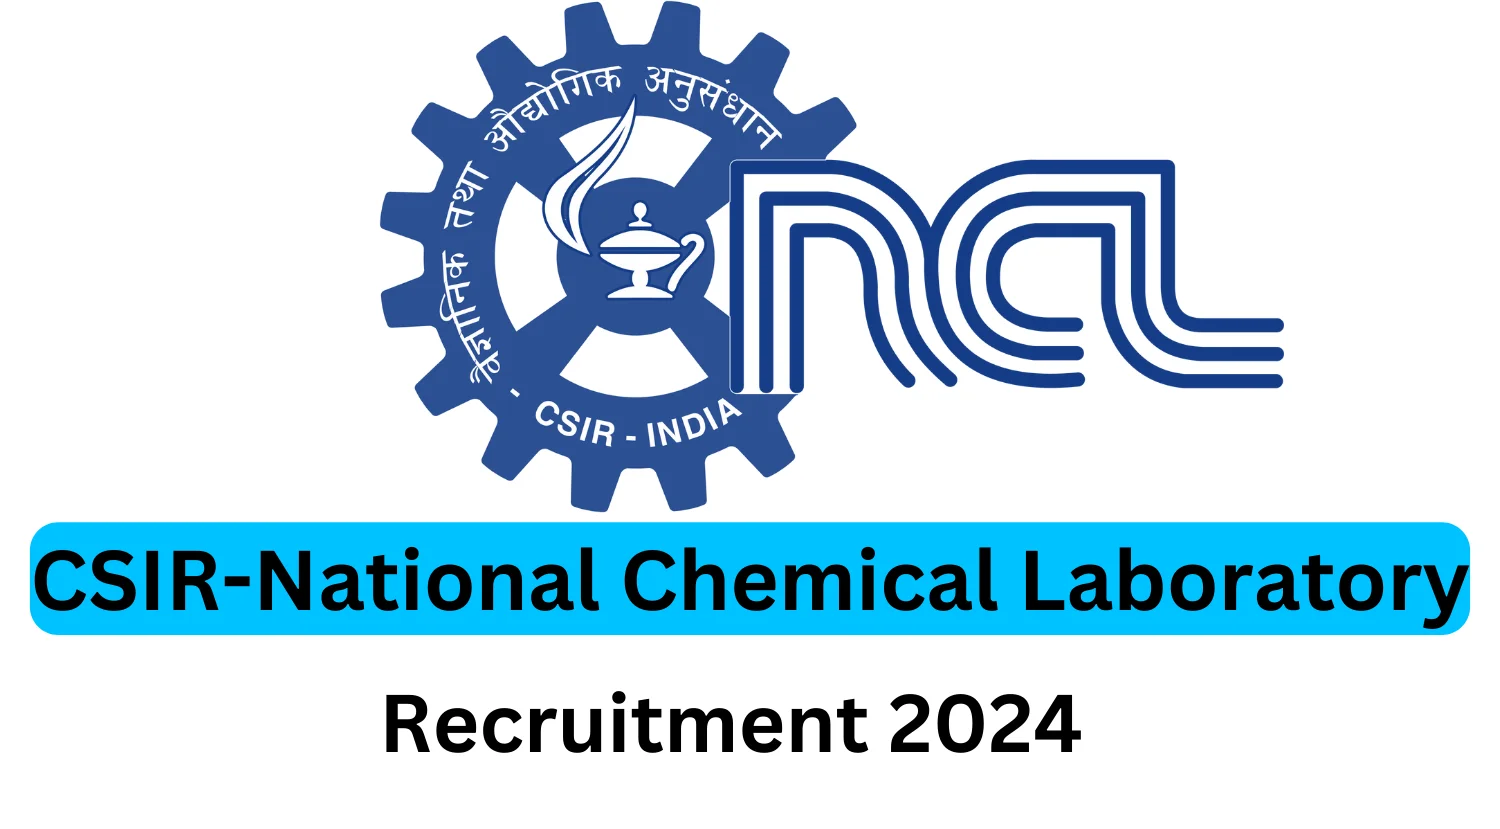 CSIR-NCL Recruitment 2024